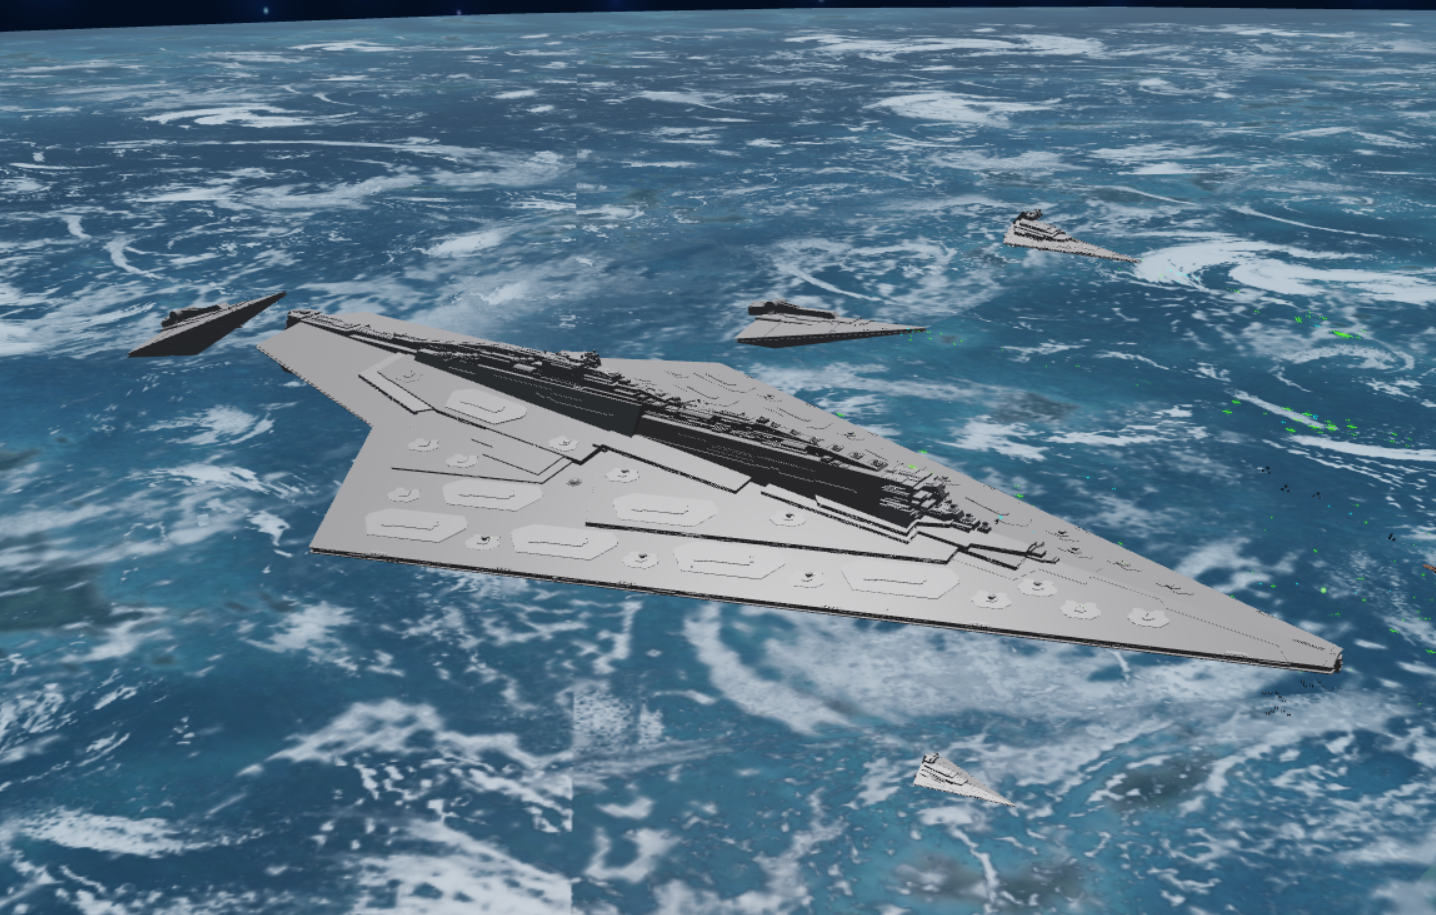 Arquitens Class Light Cruiser Project Stardust Roblox Wiki Fandom - resurgent class star destroyer project stardust roblox wiki fandom